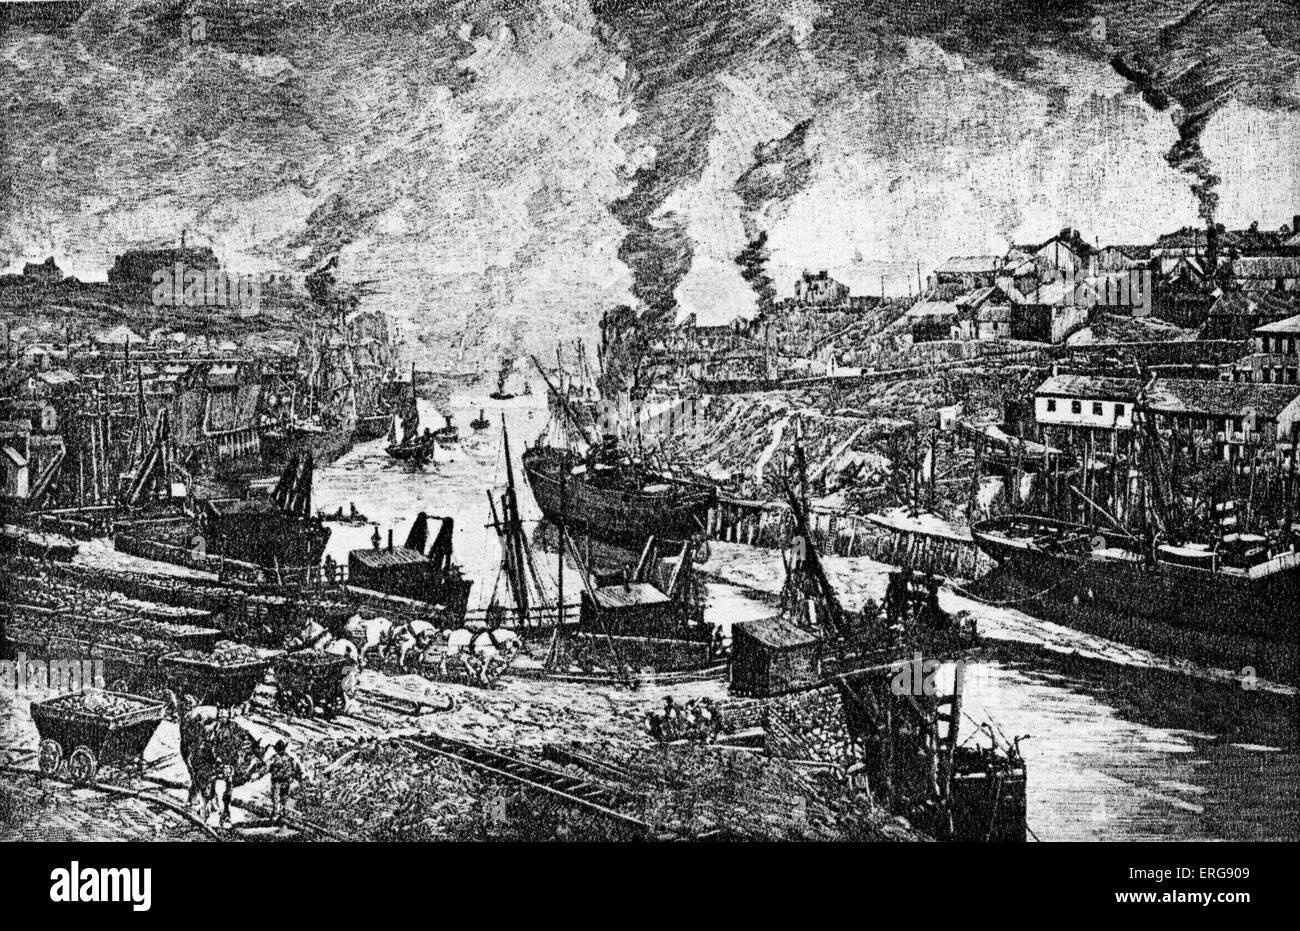 Der Fluß Ure bei Sunderland. Kupferstich von "Rivers of Great Britain", 1892. Stockfoto